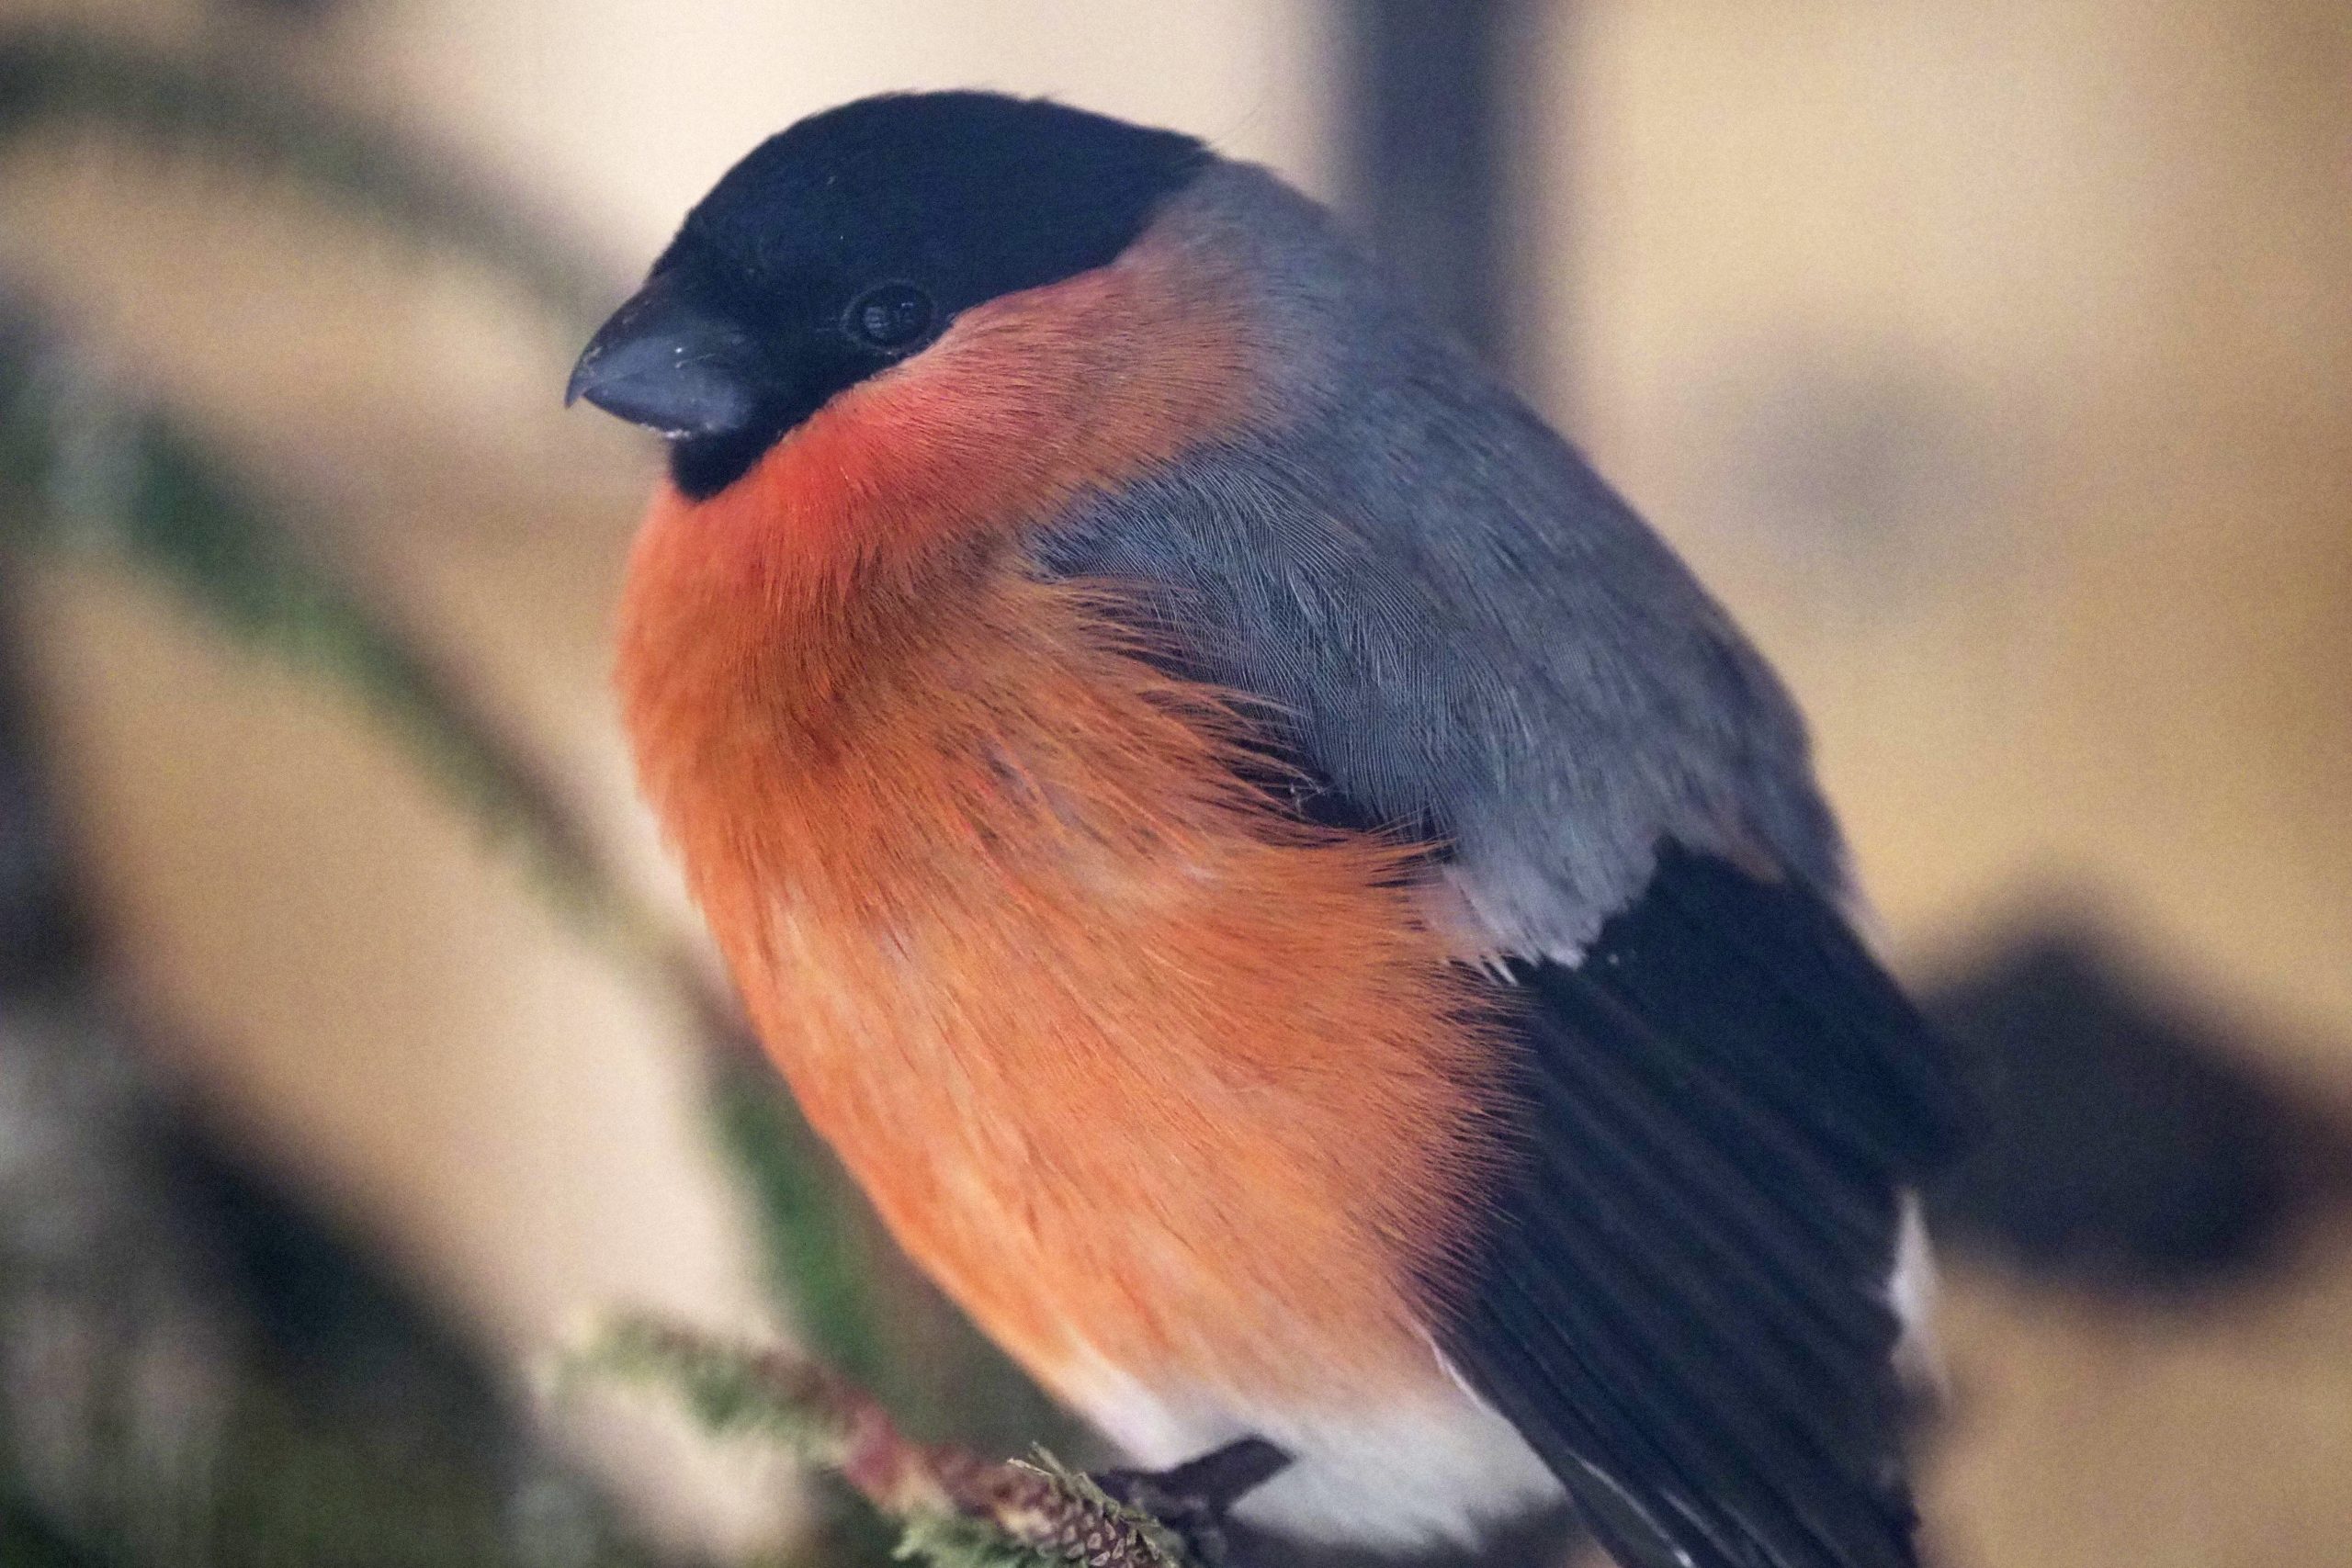 Департамент природопользования просит жителей столицы не давать много пищи птицам в зимнее время года. Фото: архив, «Вечерняя Москва»